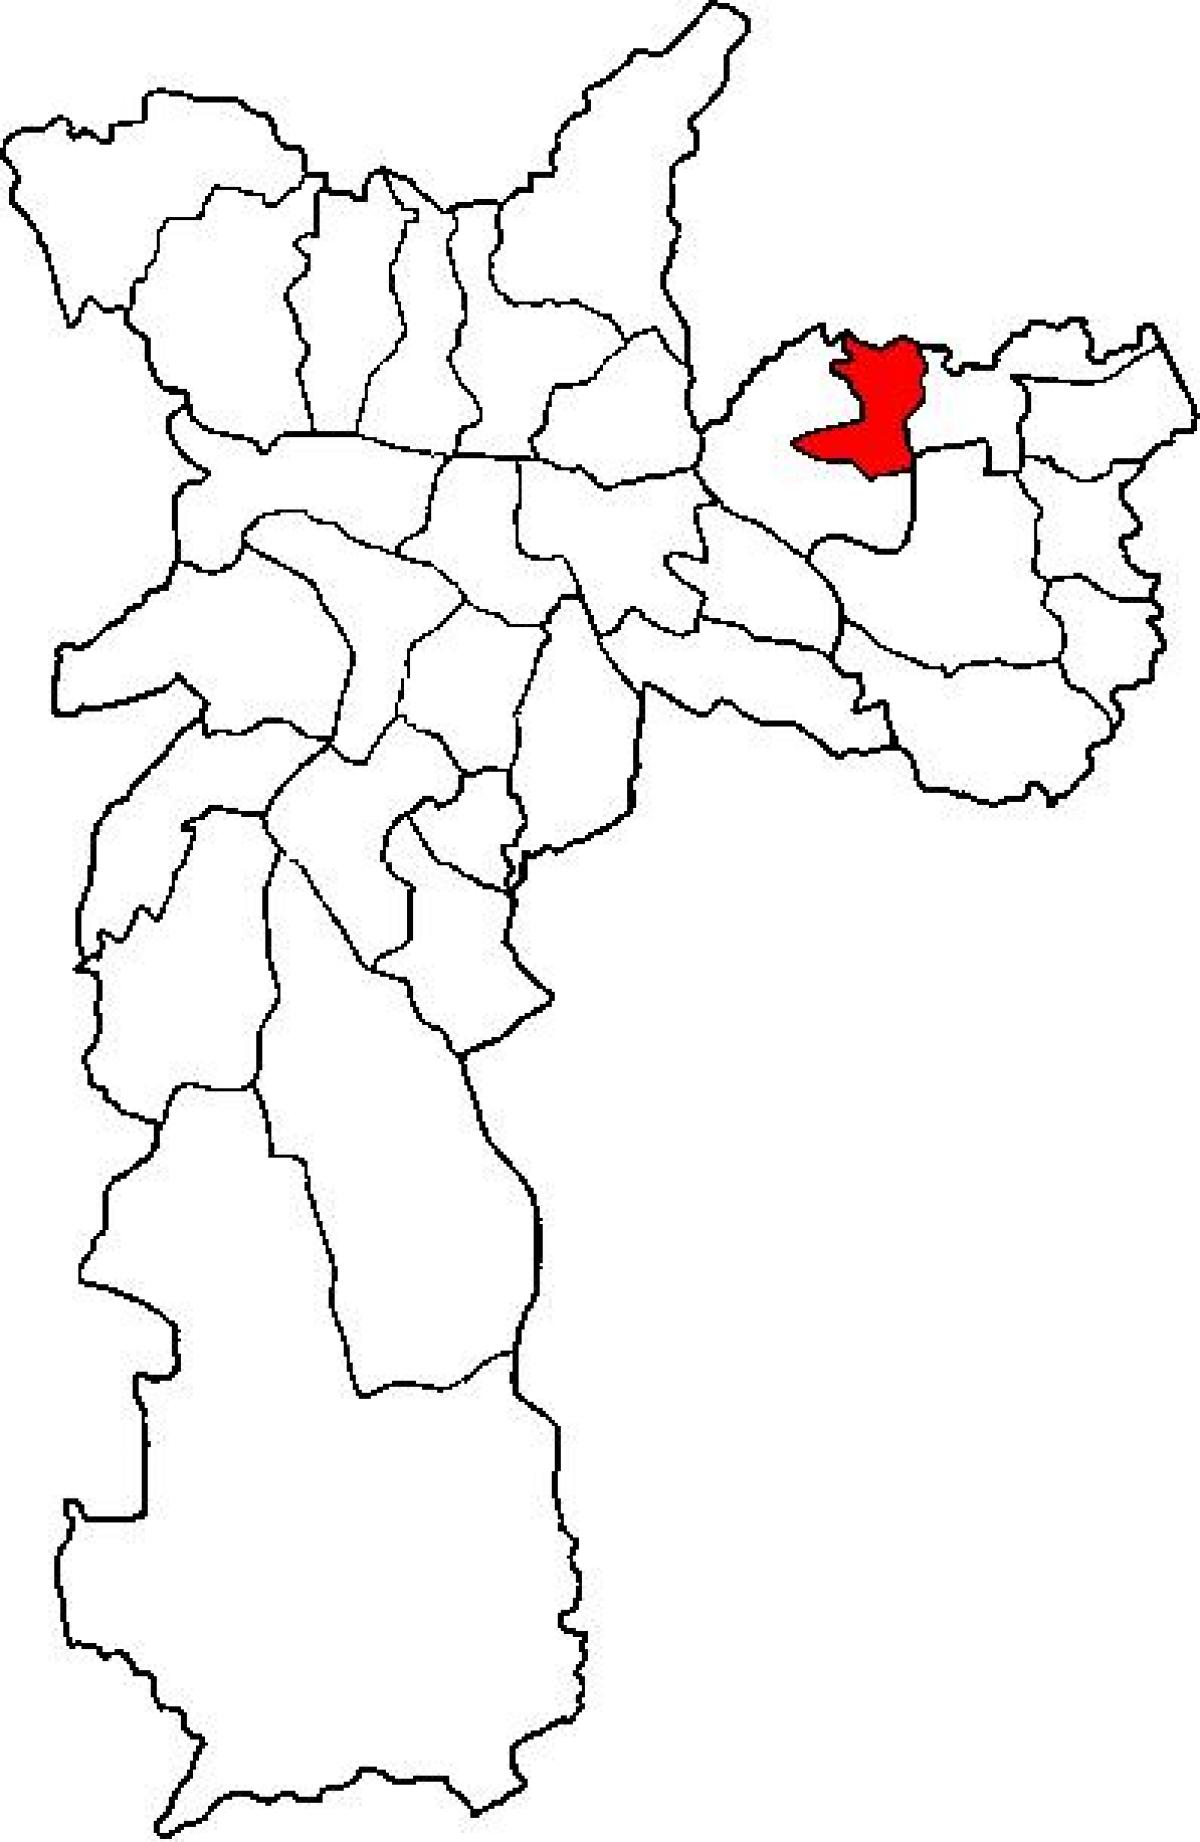 Karte von Ermelino Matarazzo sub-Präfektur von São Paulo